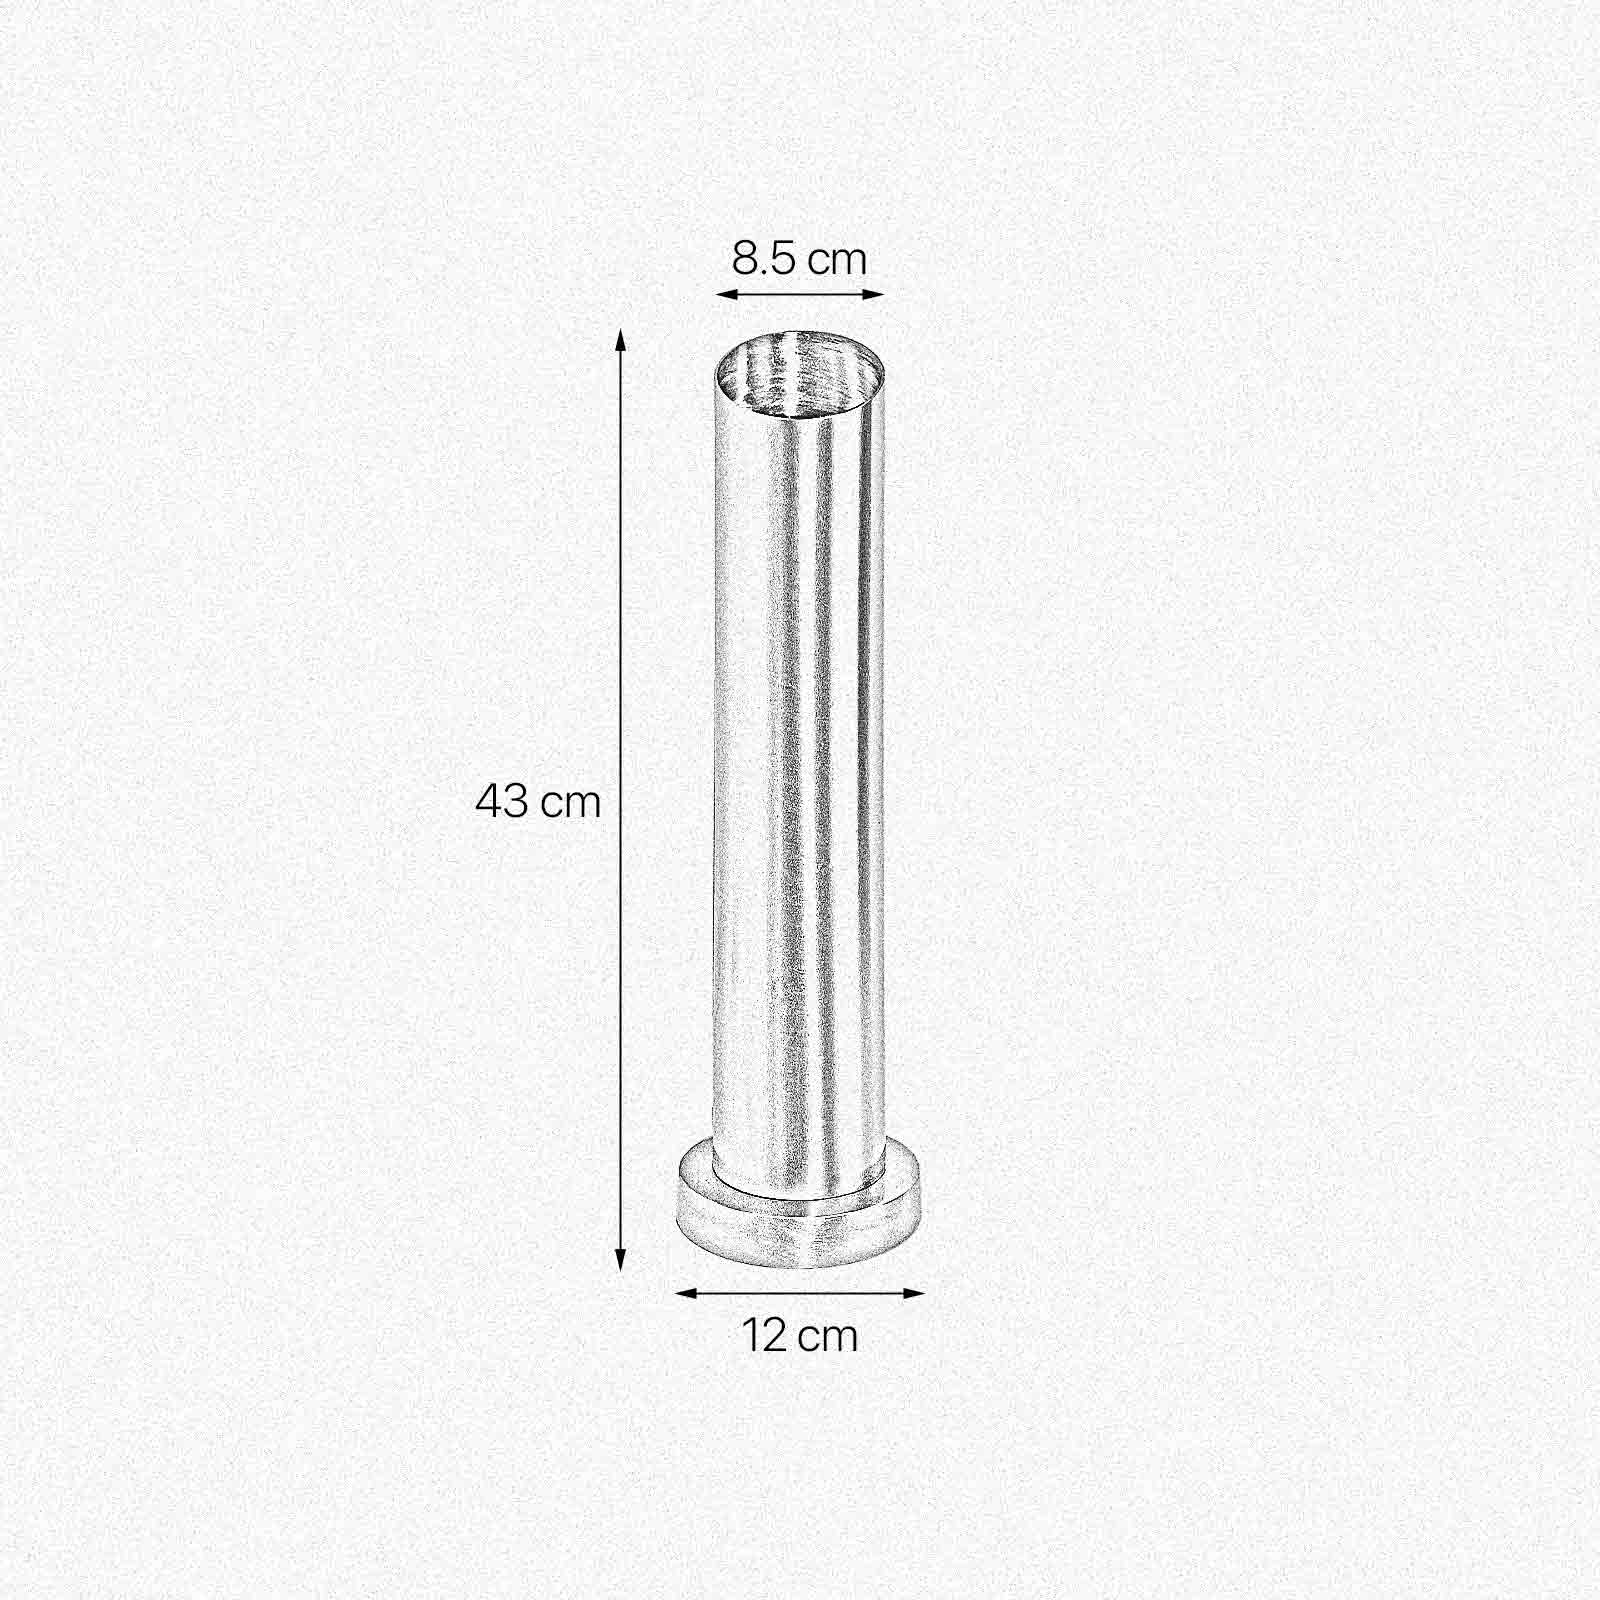 Tischlampe Messing H: 43 cm Ø 8,5 cm schmal massiv E27